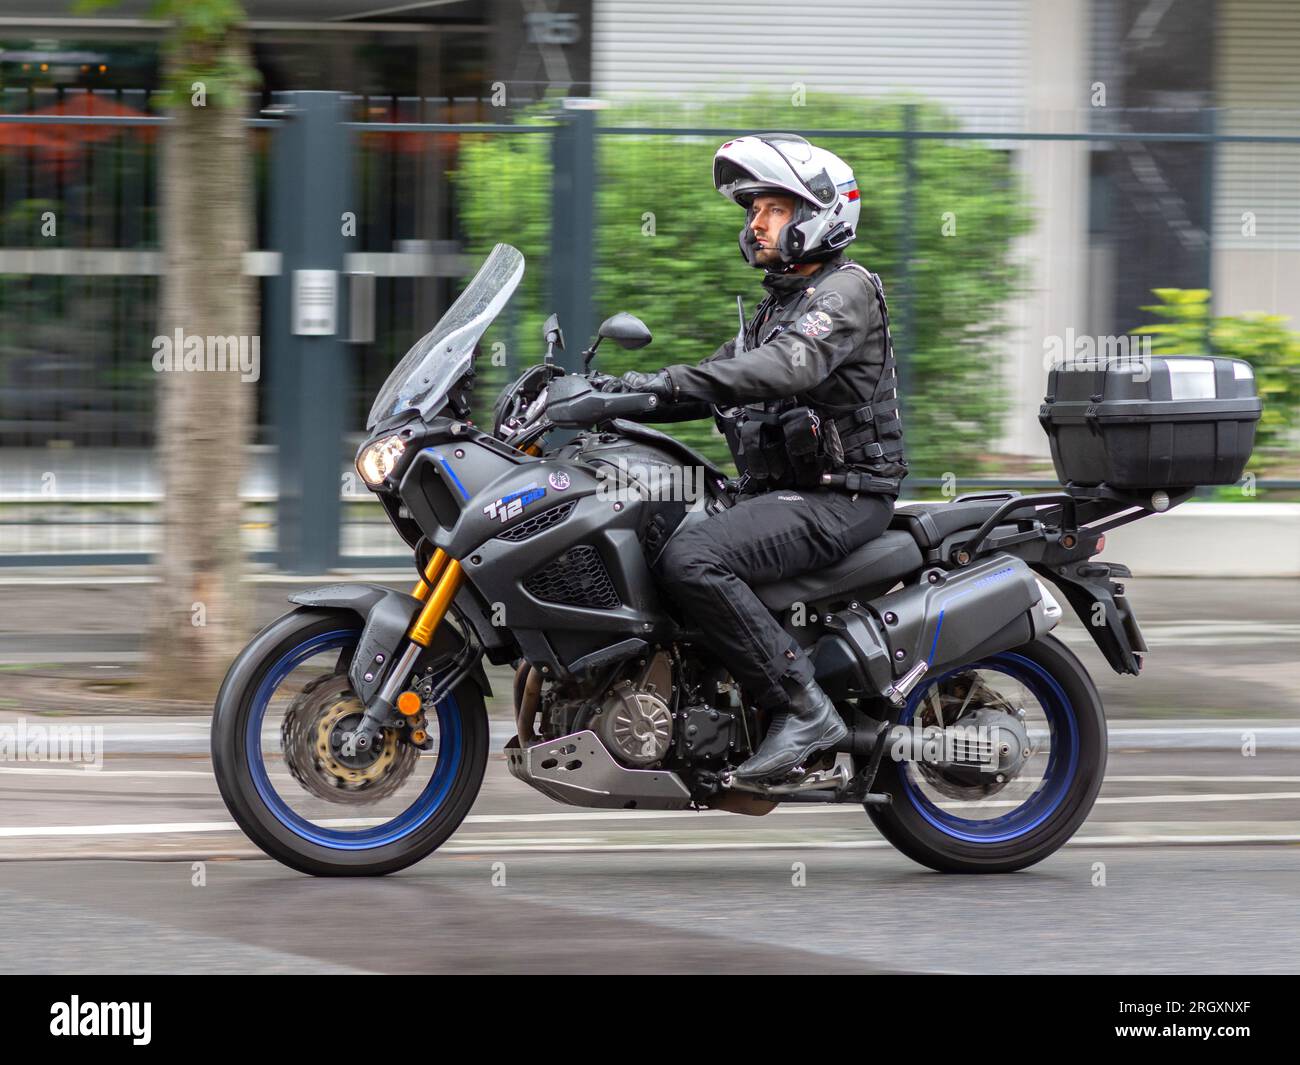 Policier conduisant une moto Yamaha Tenere 1200 non marquée le long de la rue de la ville - Paris 16, France. Banque D'Images